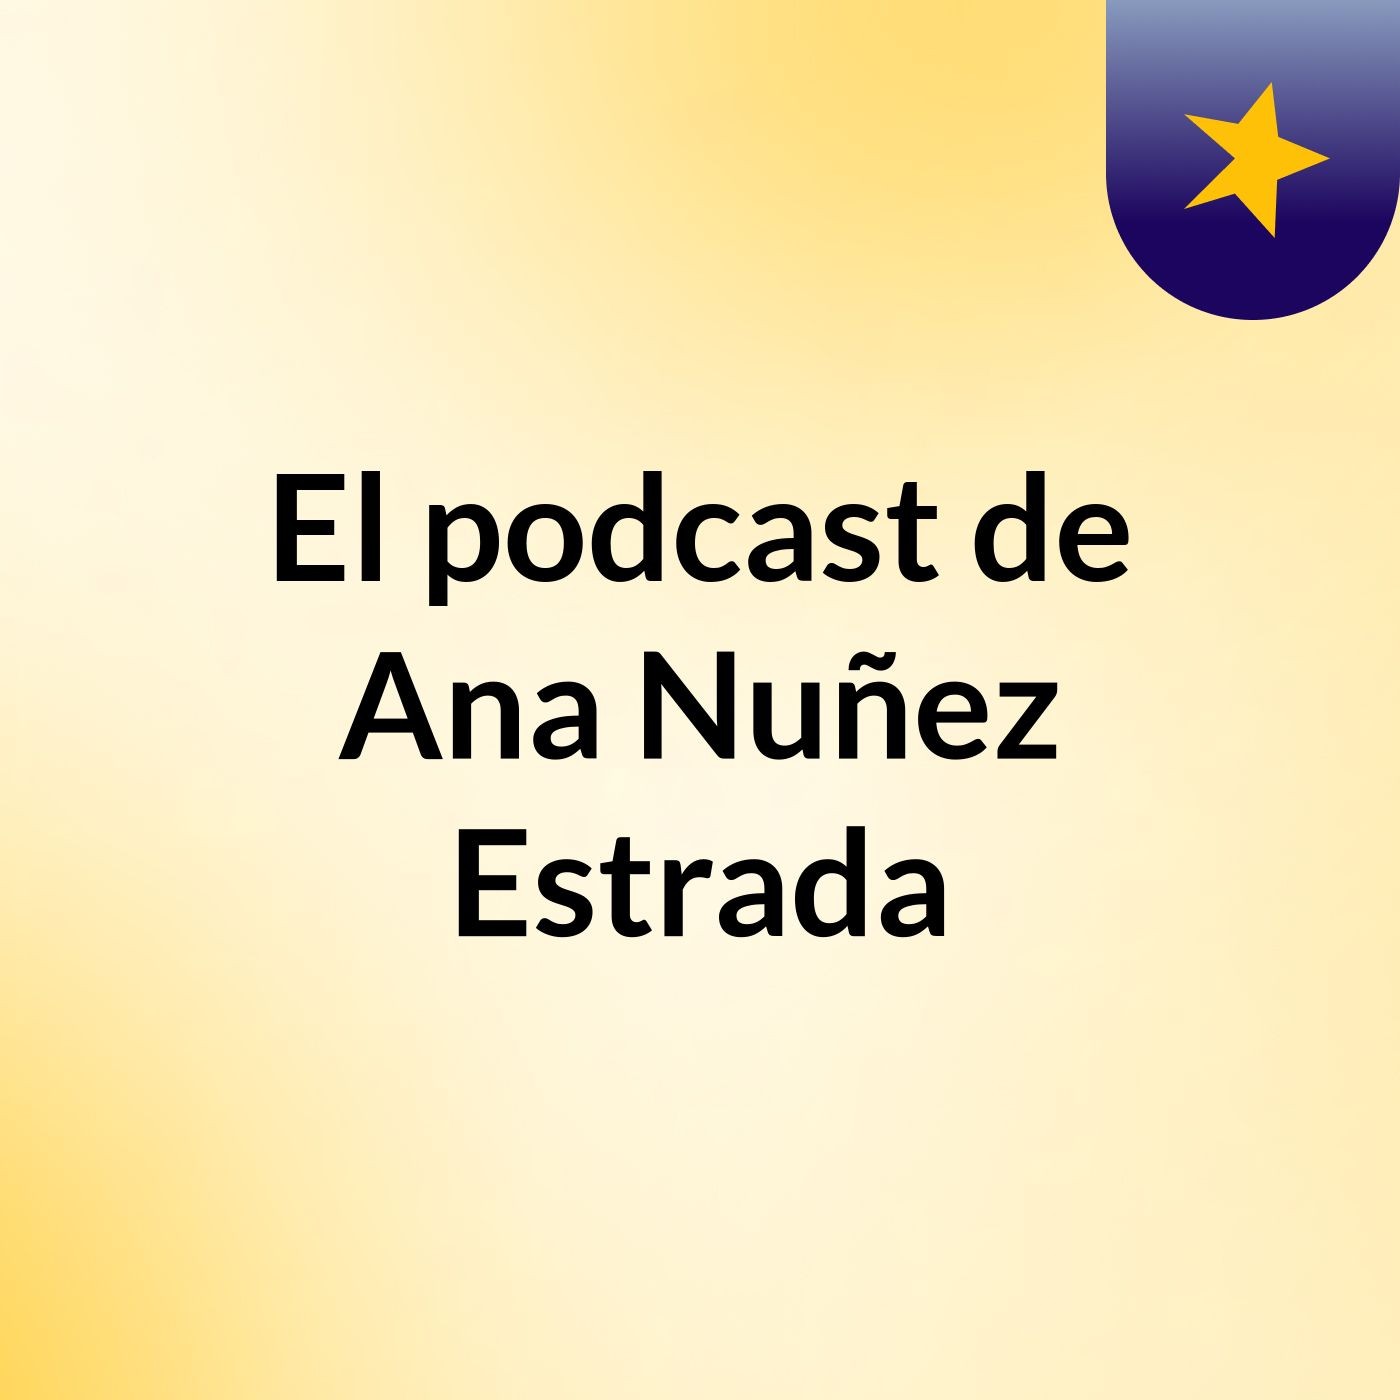 Episodio 9 - El podcast de Ana Nuñez Estrada